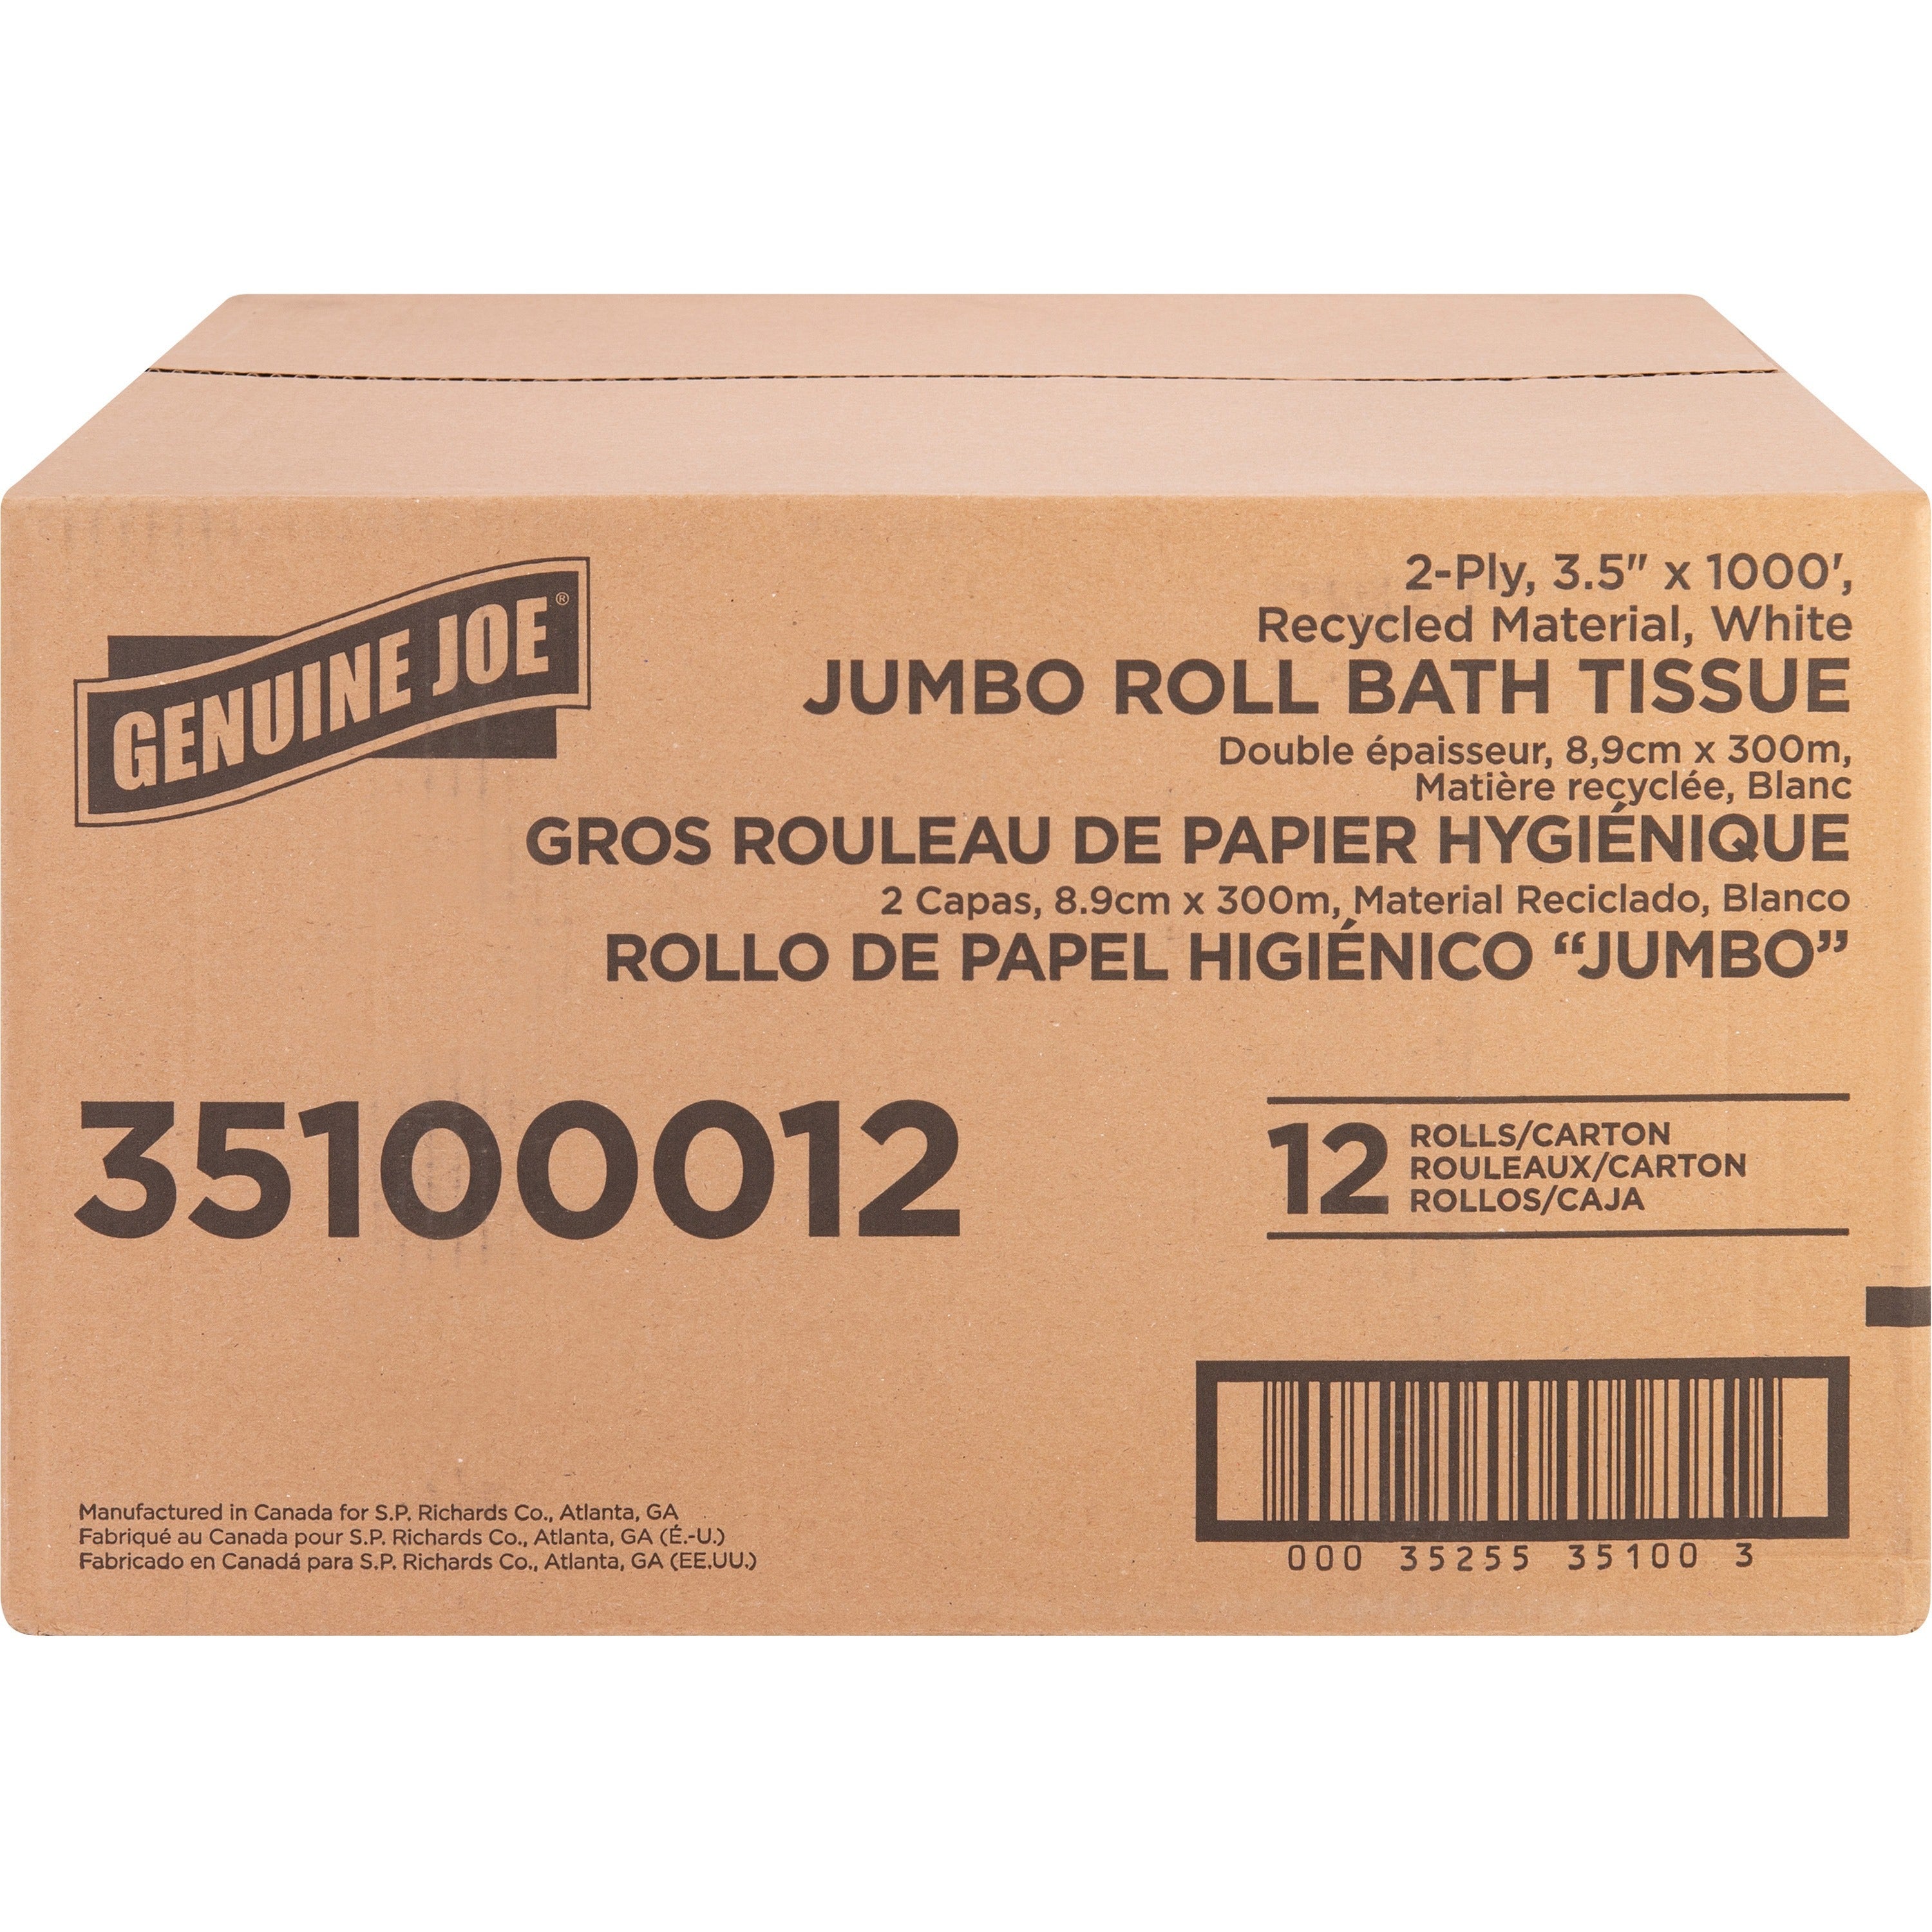 genuine-joe-jumbo-jr-dispenser-bath-tissue-roll-2-ply-350-x-1000-ft-888-roll-diameter-white-fiber-sewer-safe-septic-safe-for-bathroom-12-carton_gjo35100012 - 2